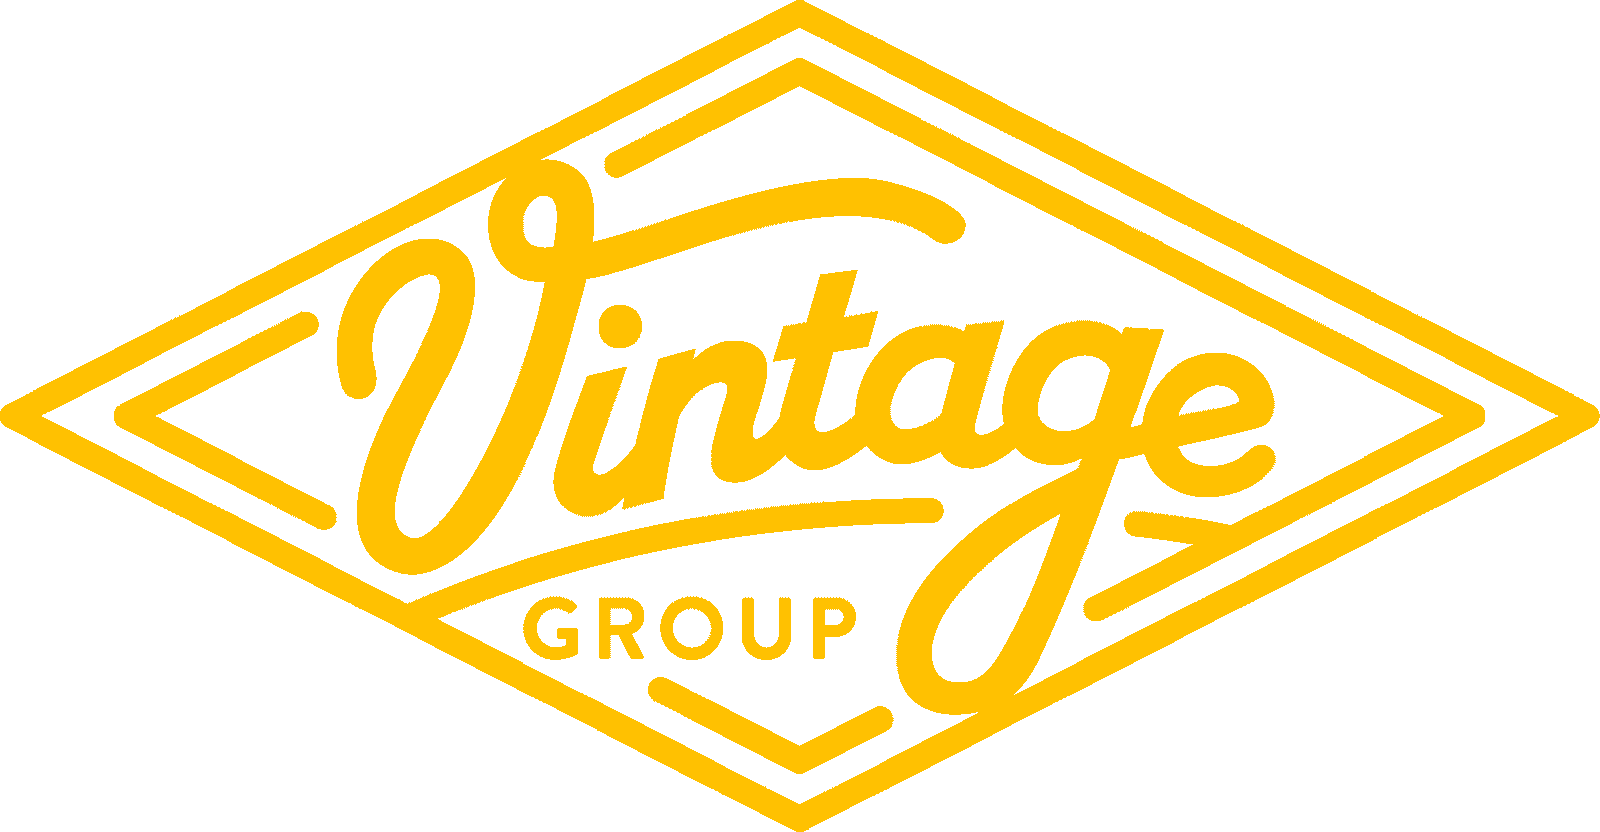 Vintage Group